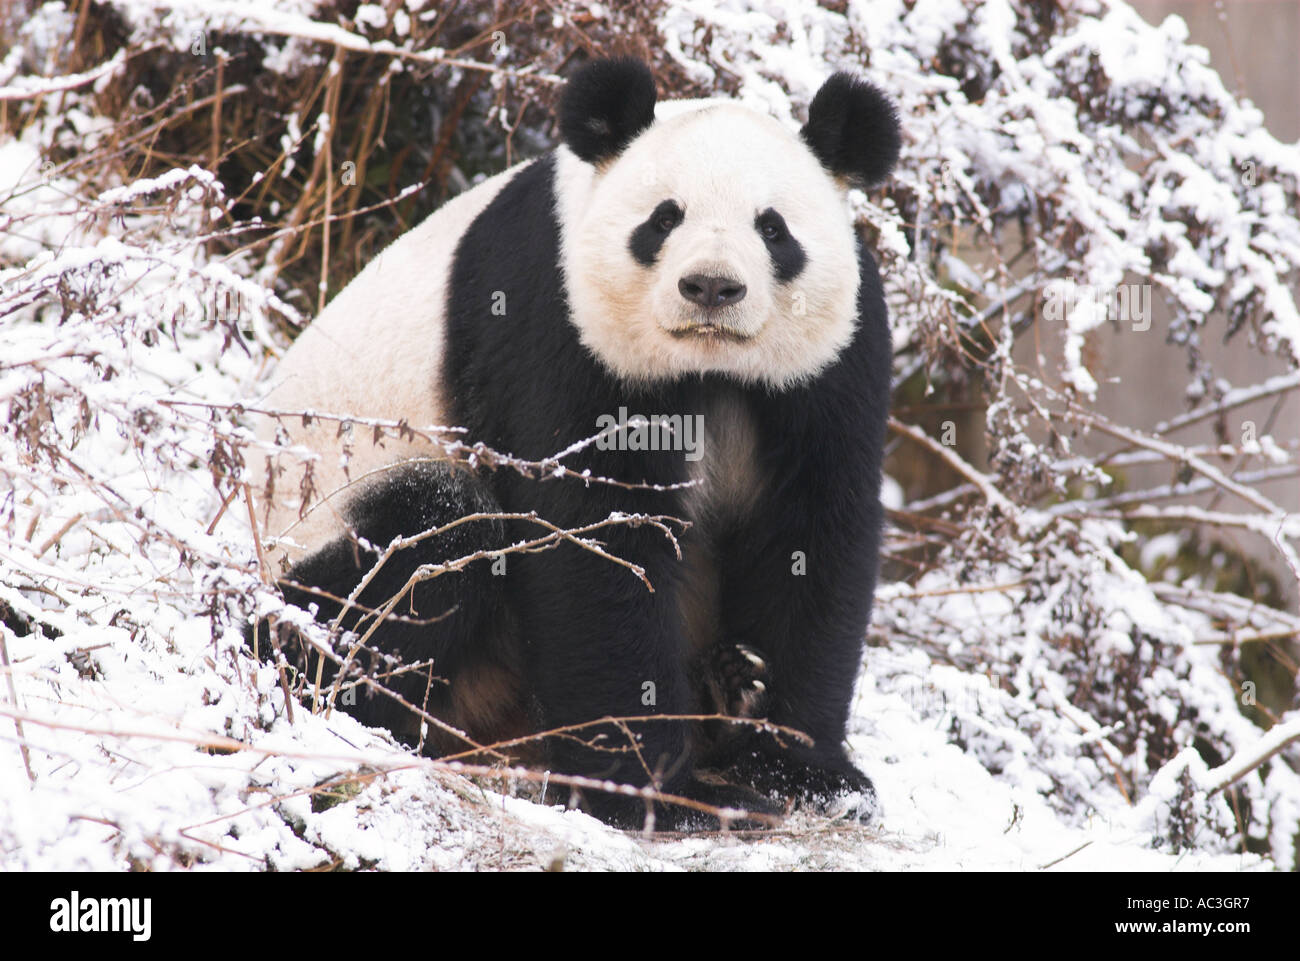 Panda géant Ailuropoda melanoleuca dans paysage de neige Centre de conservation et de recherche de Wolong Sichuan Province du Sichuan Chine Banque D'Images